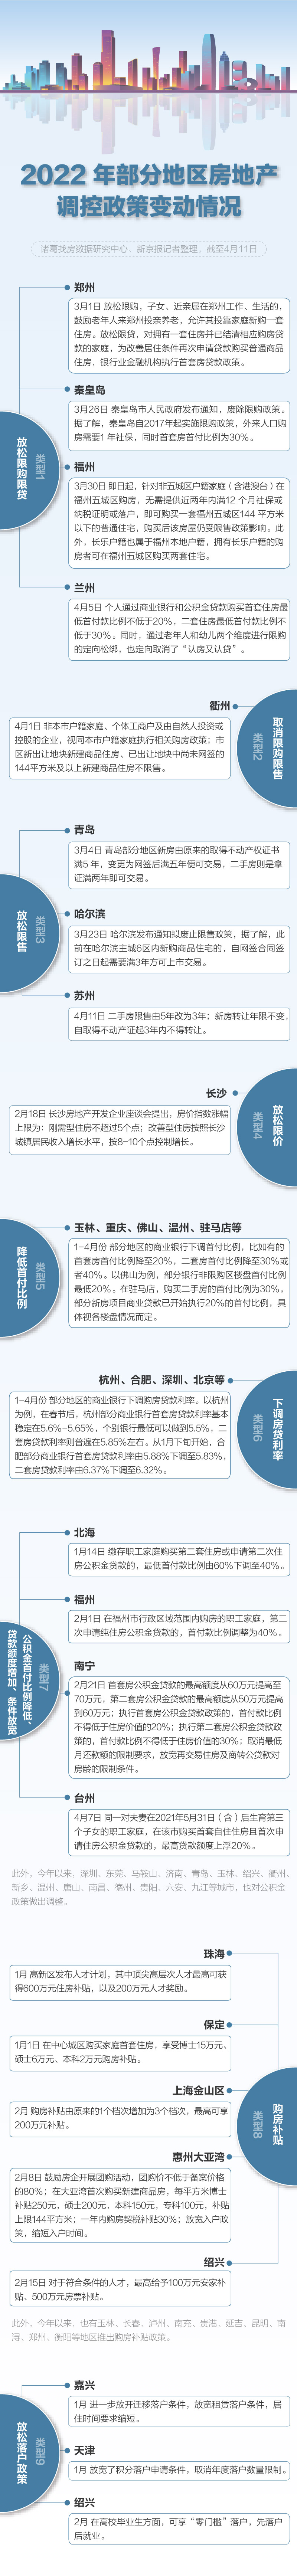 一图看懂超60城降首付、松绑限购限售等政策_中国网地产